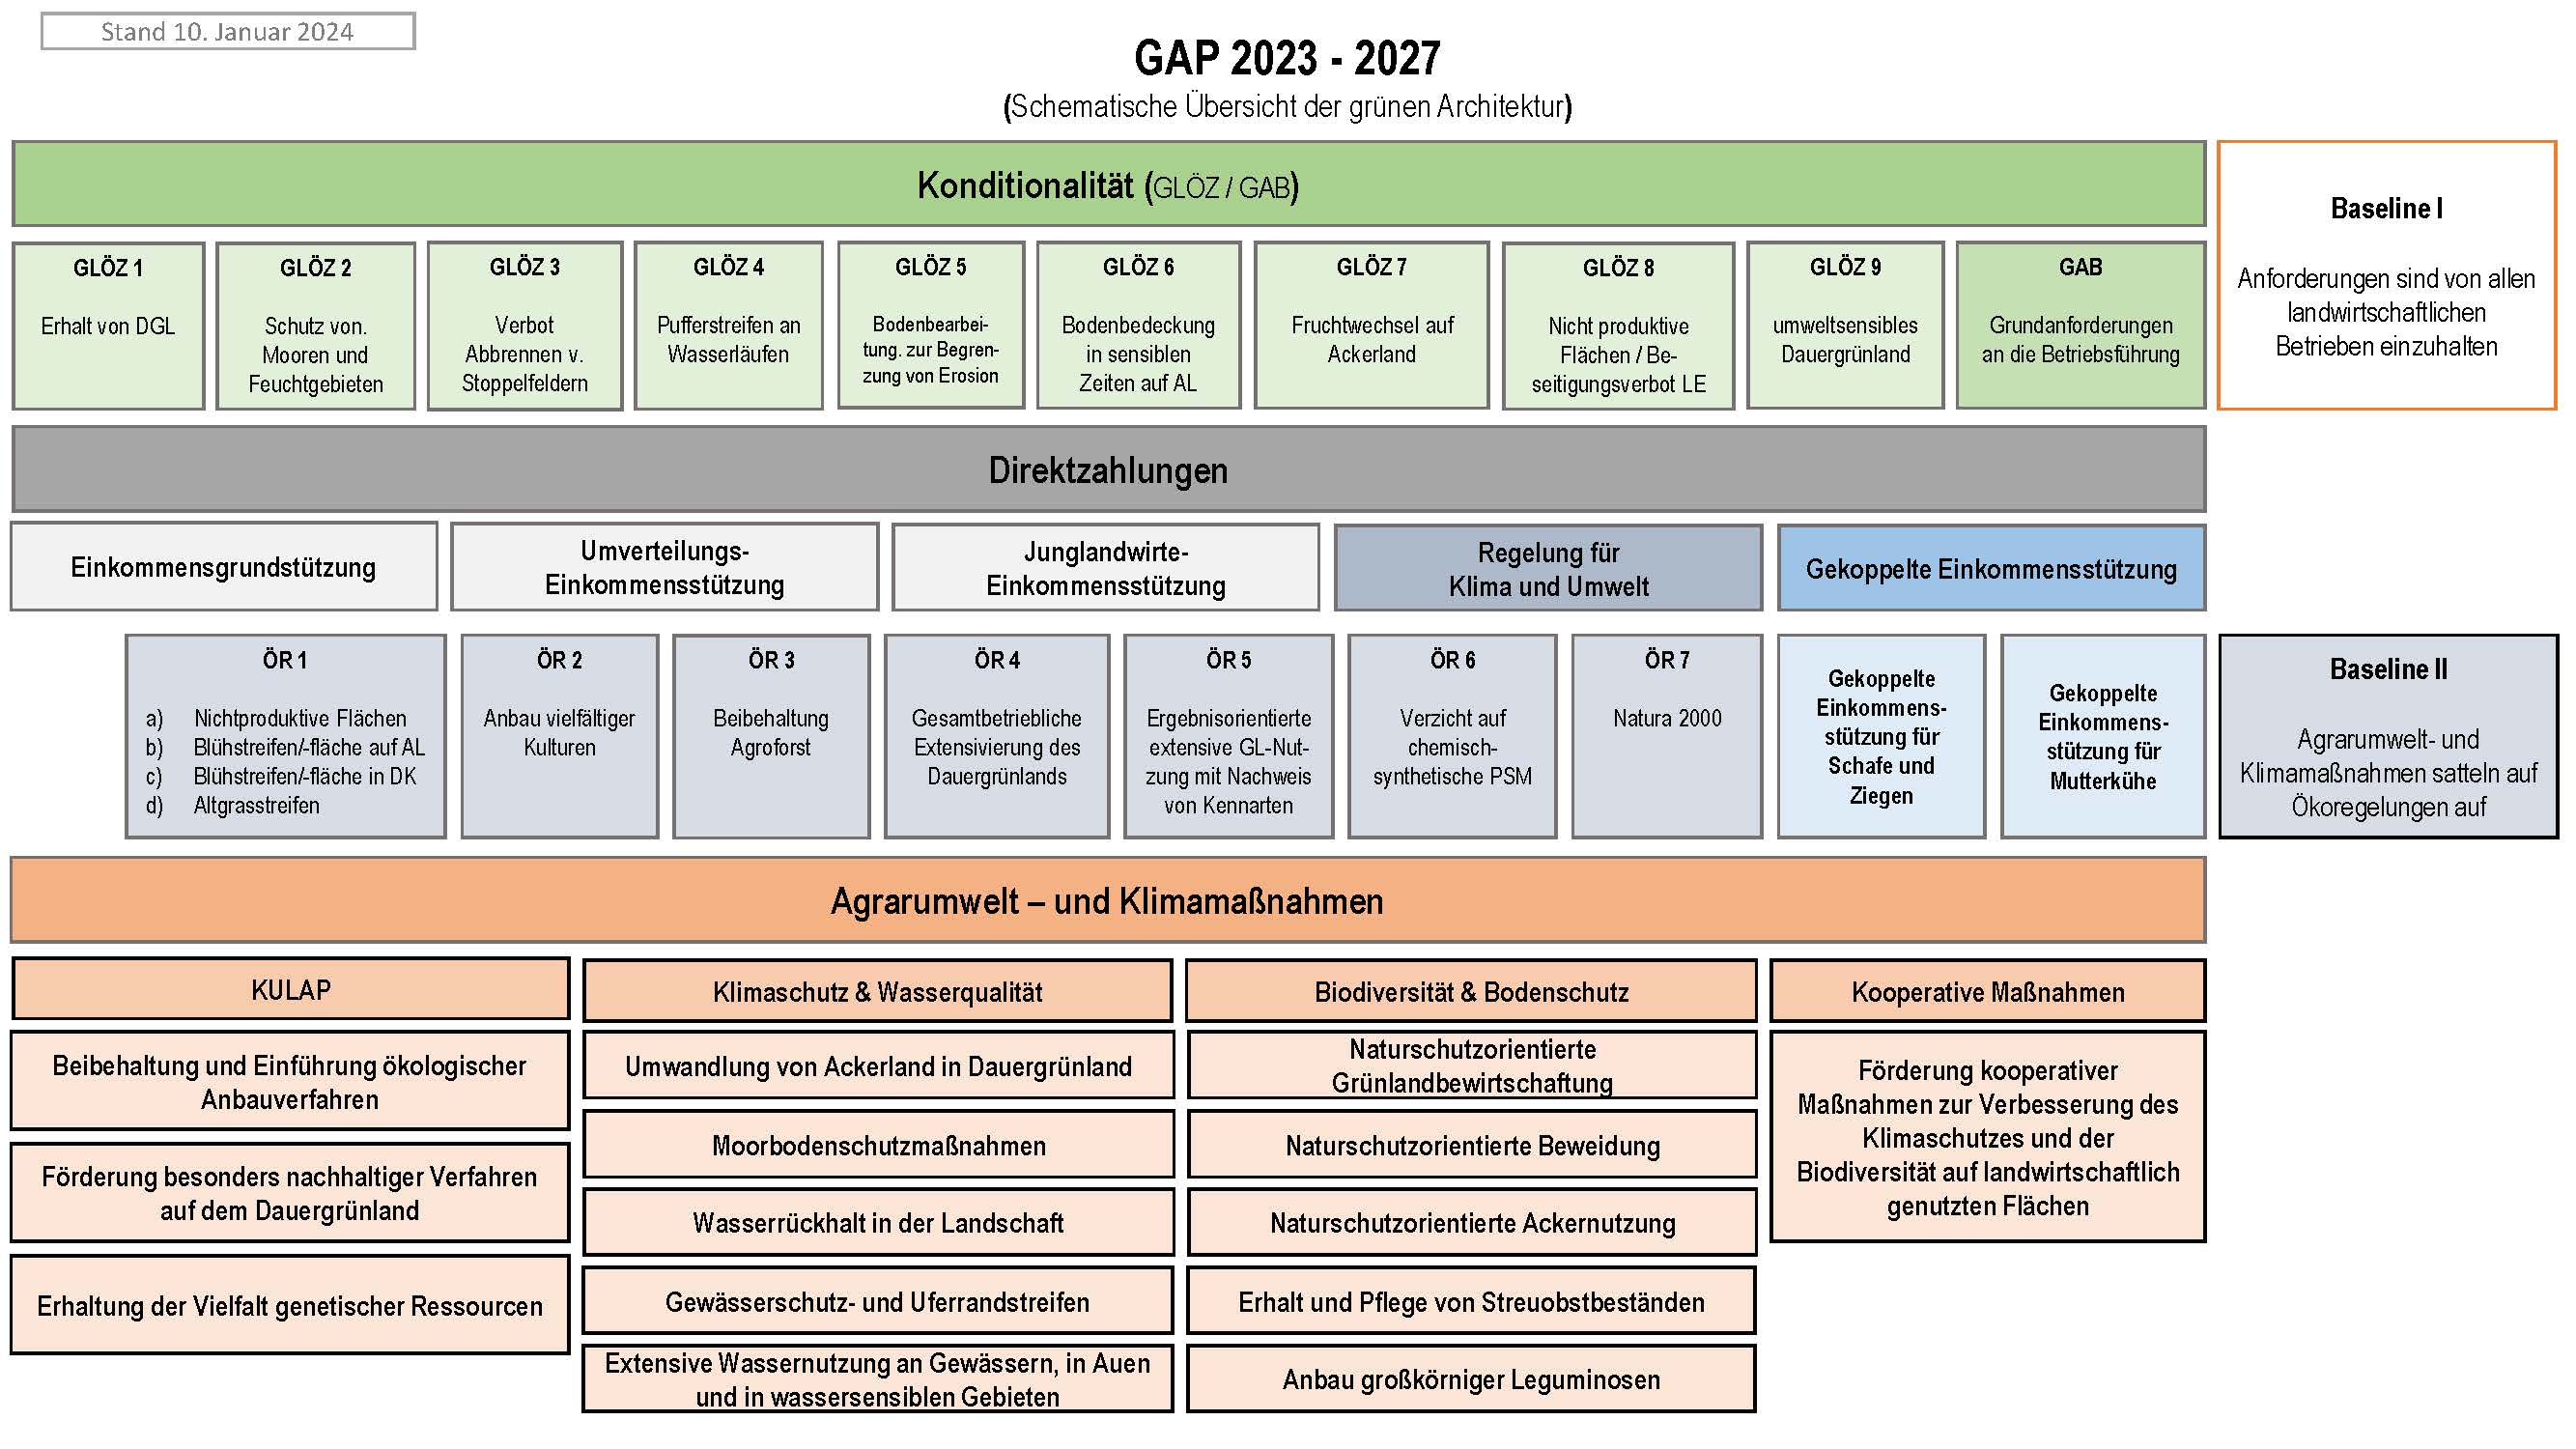 Schema GAP 2023 bis 2027